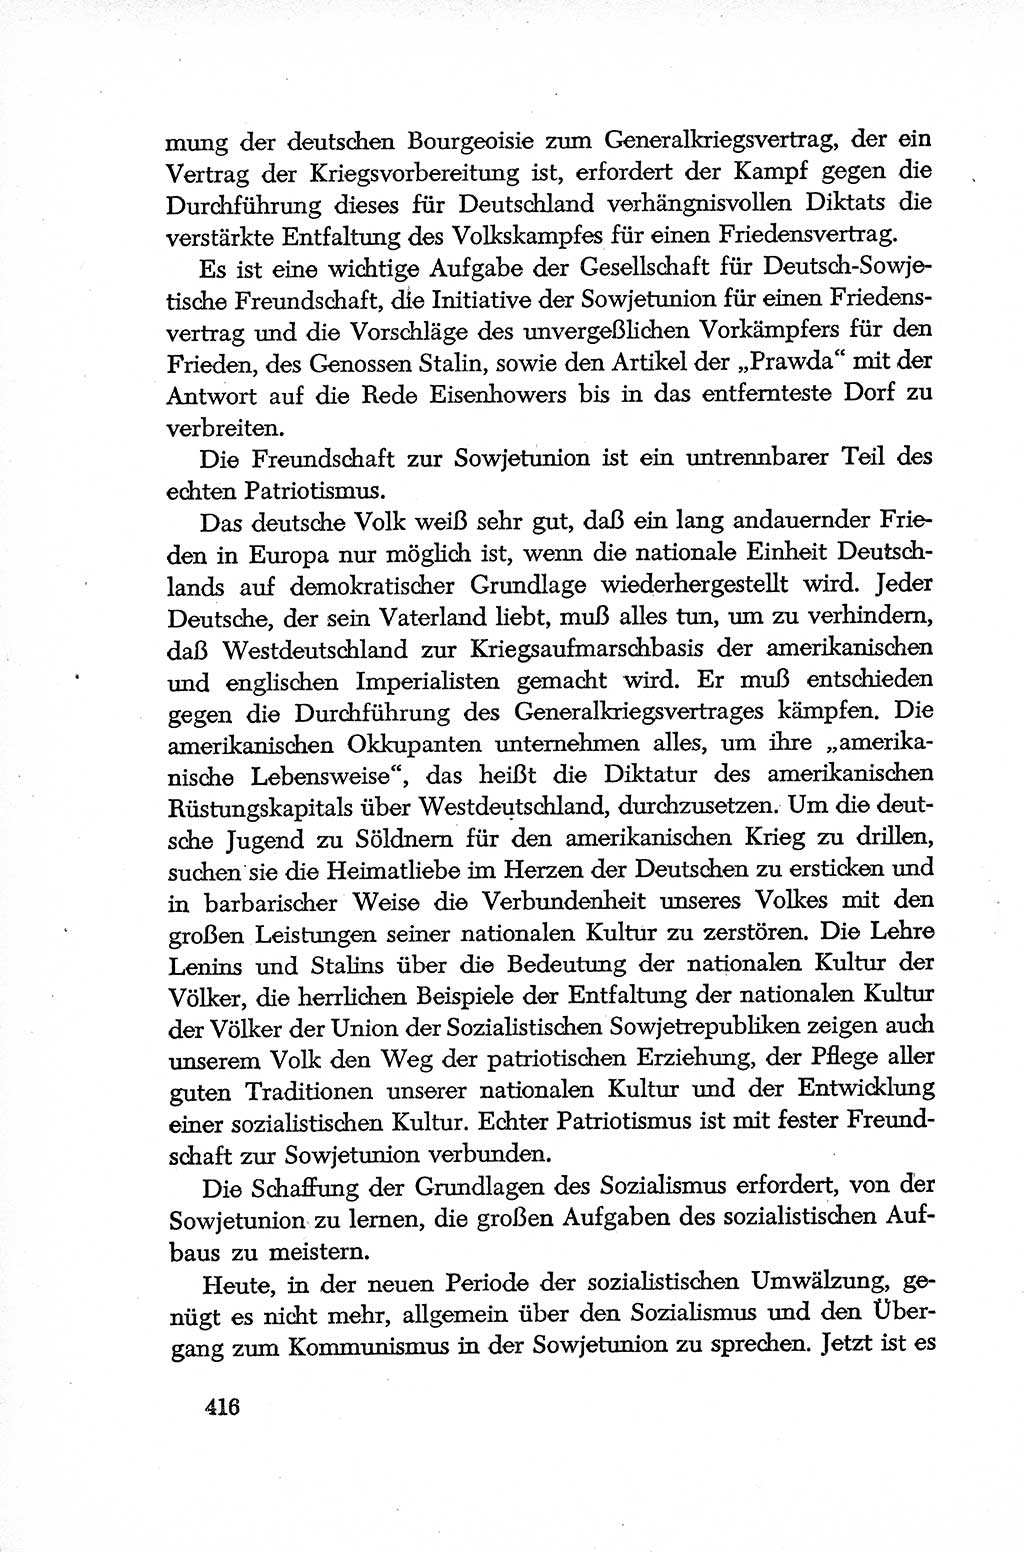 Dokumente der Sozialistischen Einheitspartei Deutschlands (SED) [Deutsche Demokratische Republik (DDR)] 1952-1953, Seite 416 (Dok. SED DDR 1952-1953, S. 416)